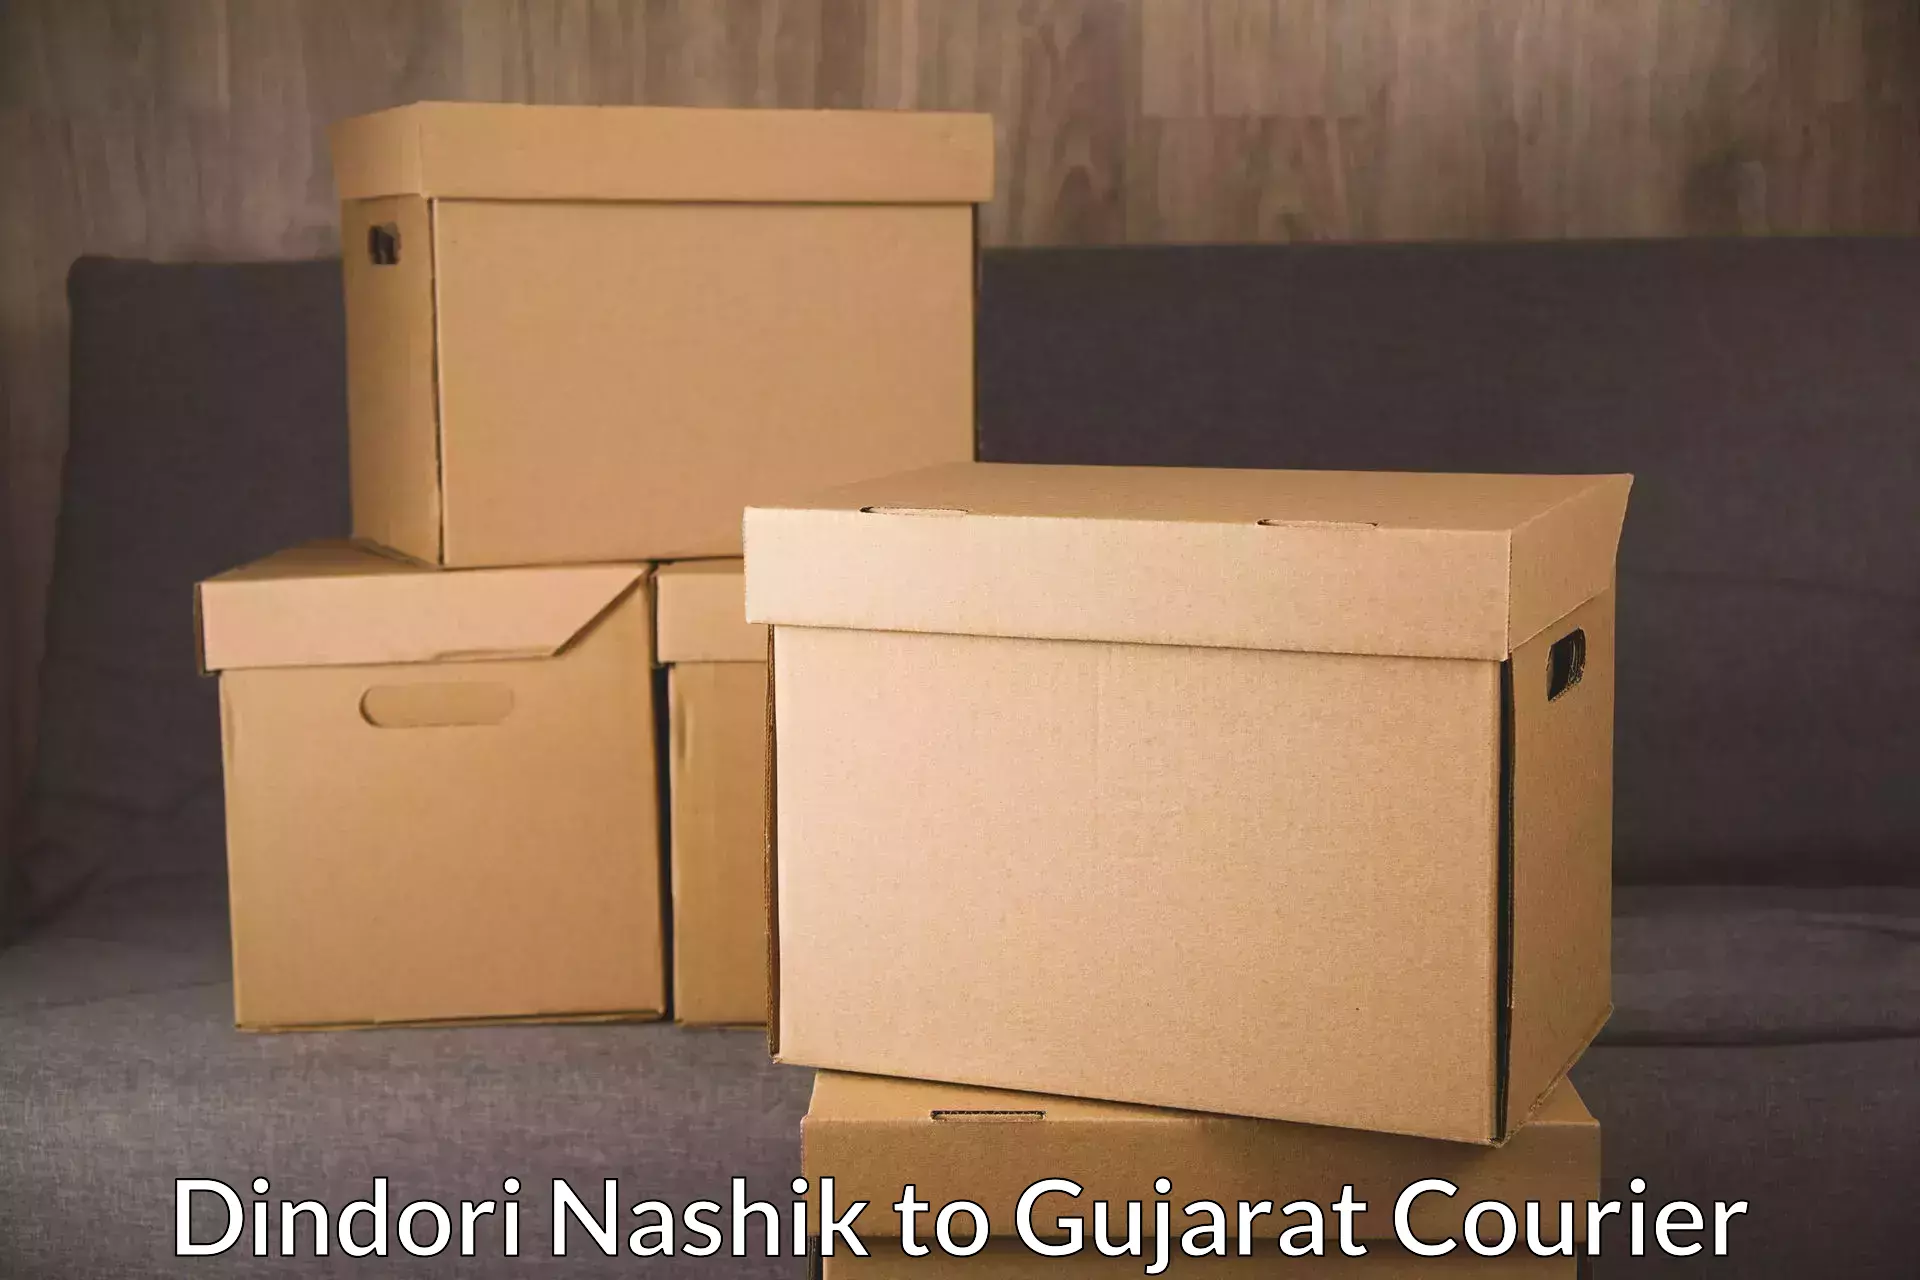 Nationwide parcel services Dindori Nashik to Vyara